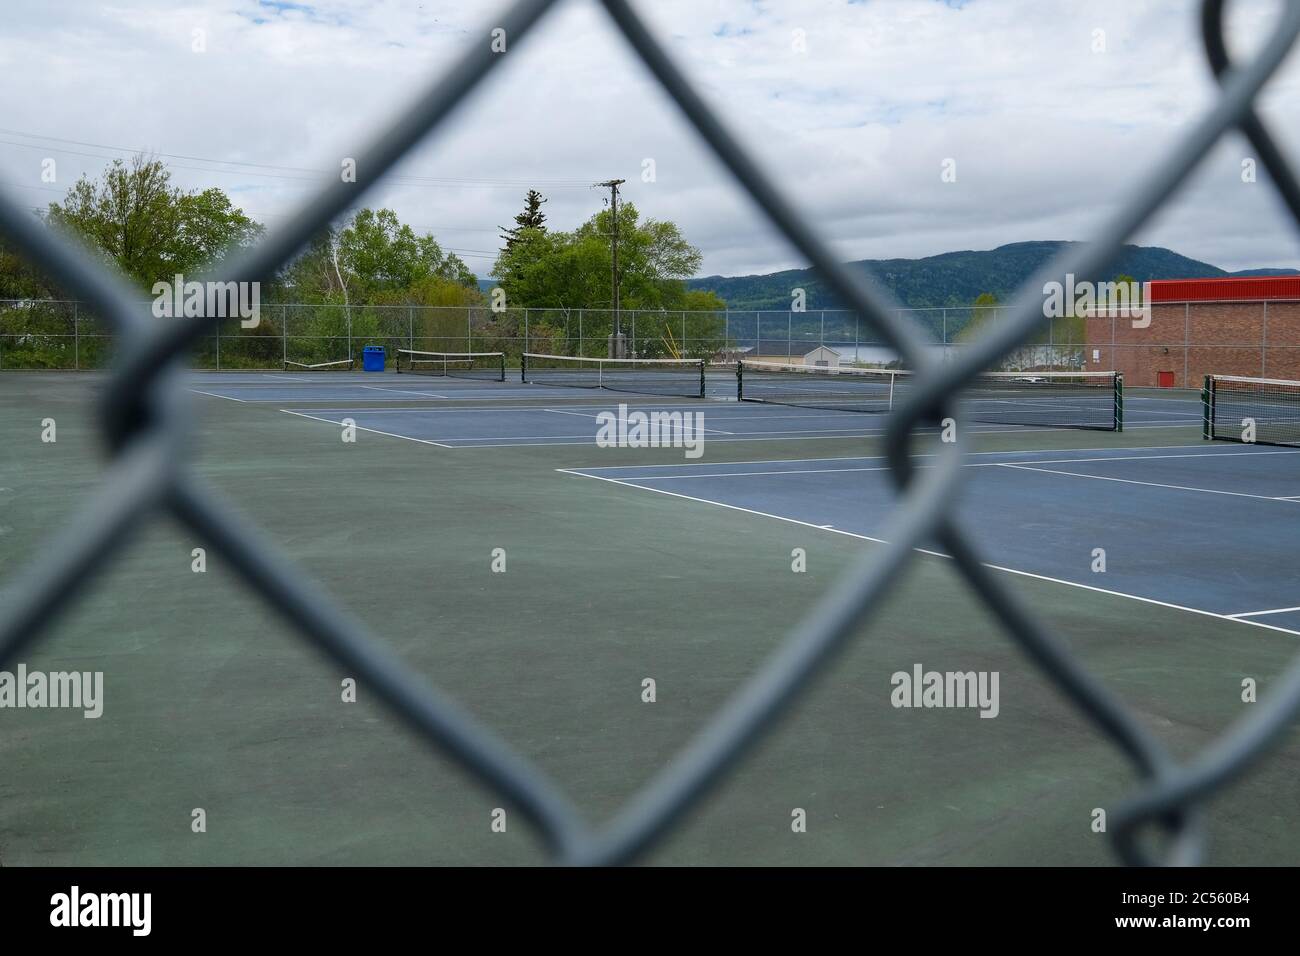 Mehrere Tennisplätze im Freien unter einem hellen, bewölkten Himmel. Die Gerichte sind blau gestrichen und sie haben jeweils ein Netz, das die Gerichte teilt. Stockfoto